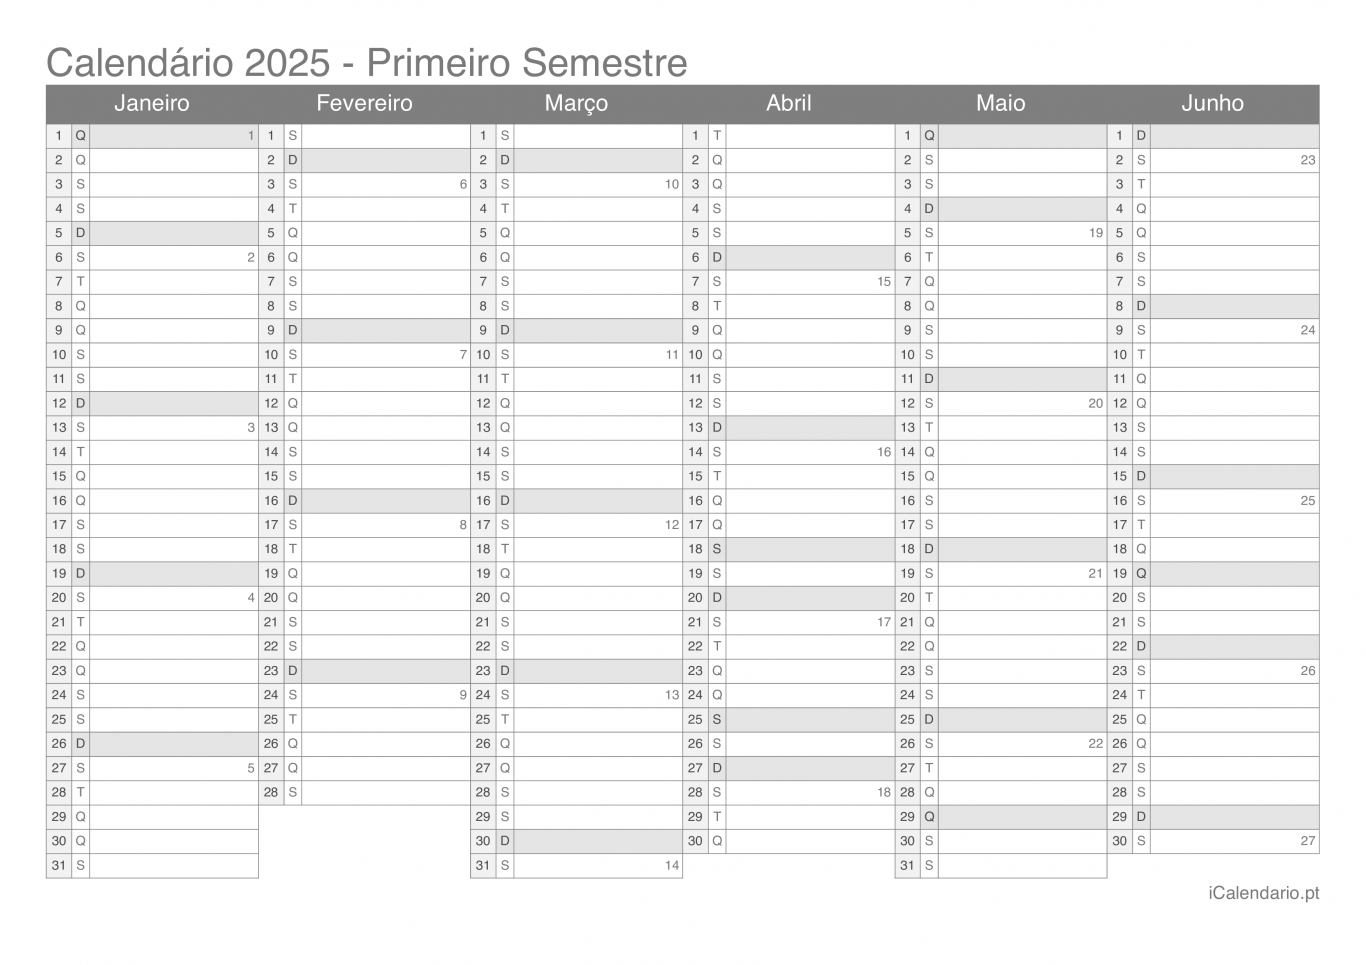 Calendário por semestre com números da semana 2025